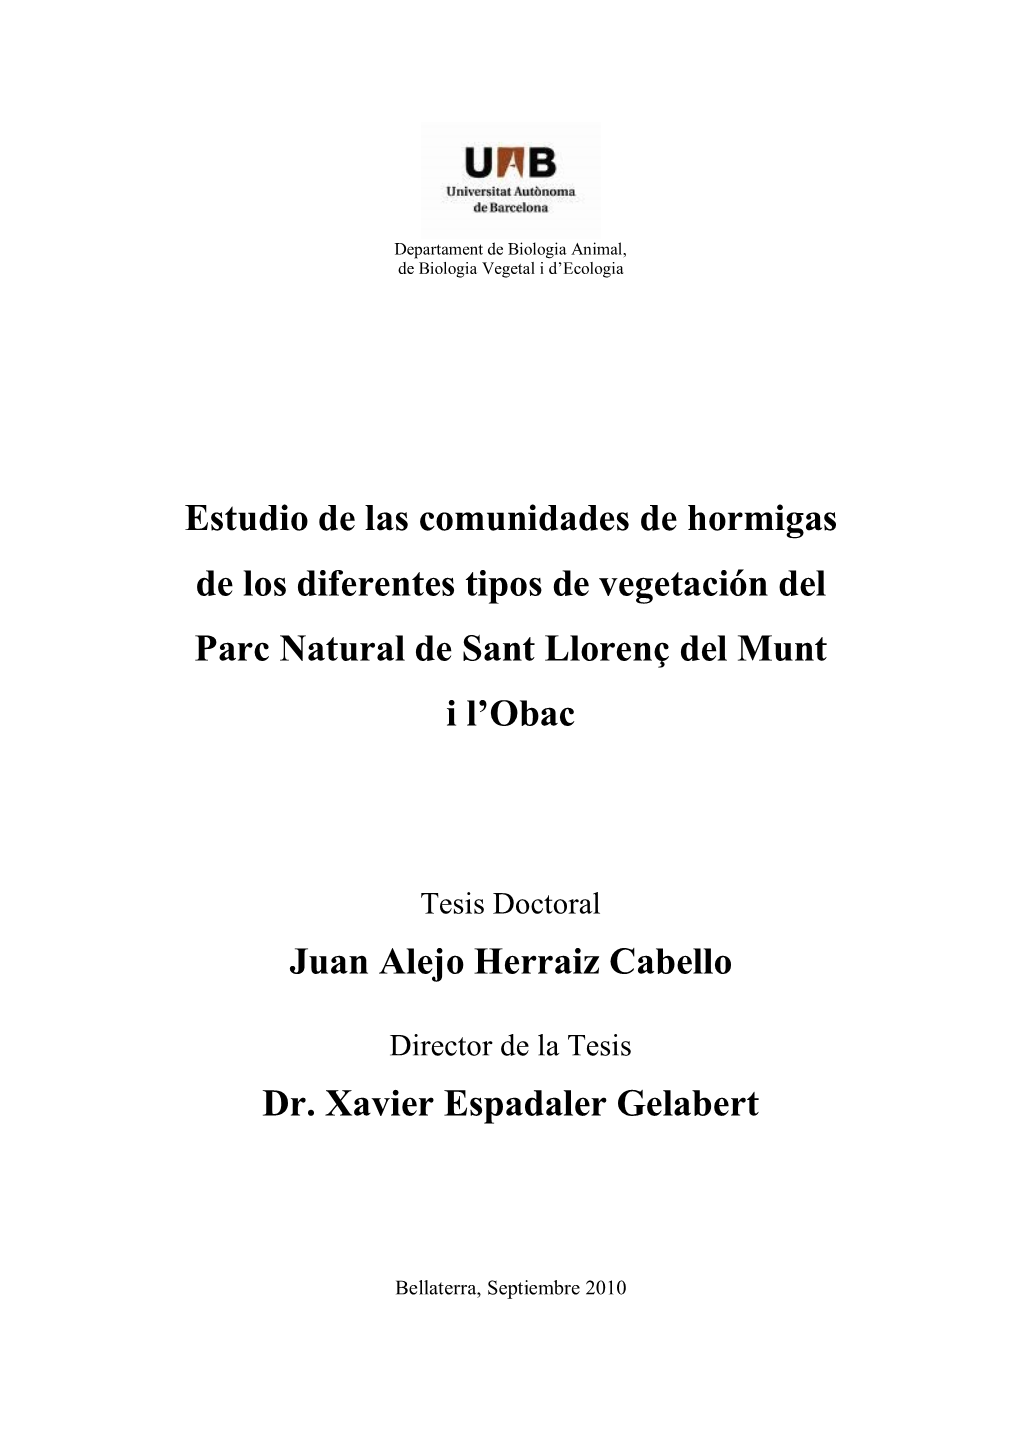 Estudio De Las Comunidades De Hormigas De Los Diferentes Tipos De Vegetación Del Parc Natural De Sant Llorenç Del Munt I L’Obac